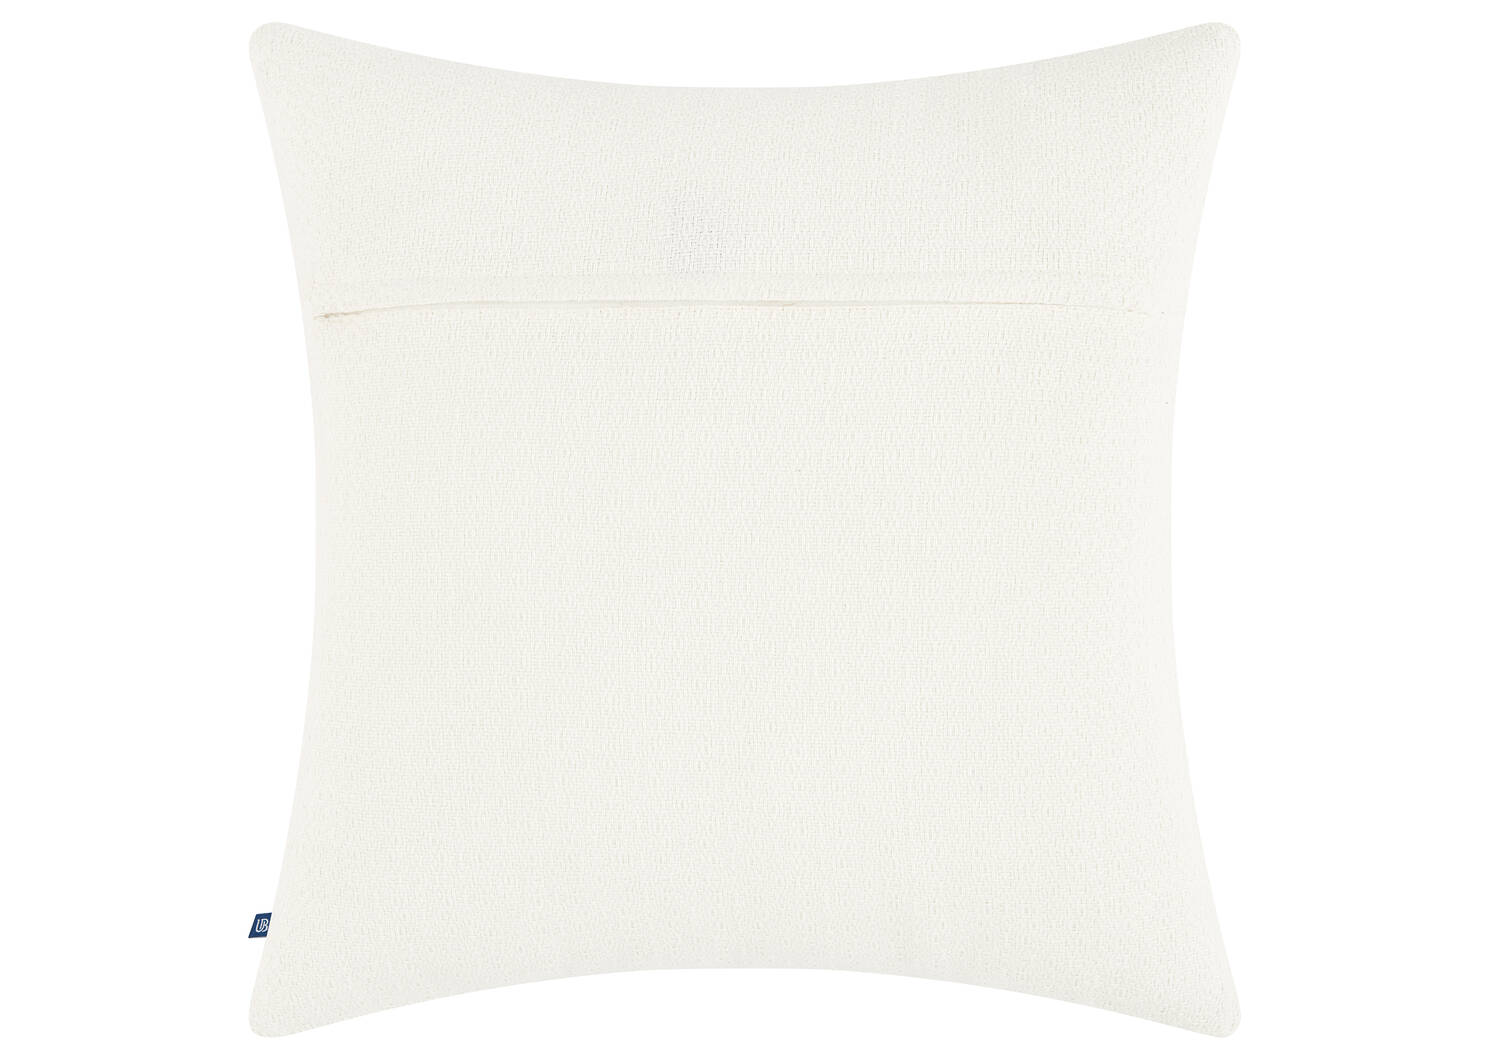 Weiss Cotton Pillow 20x20 White/Black